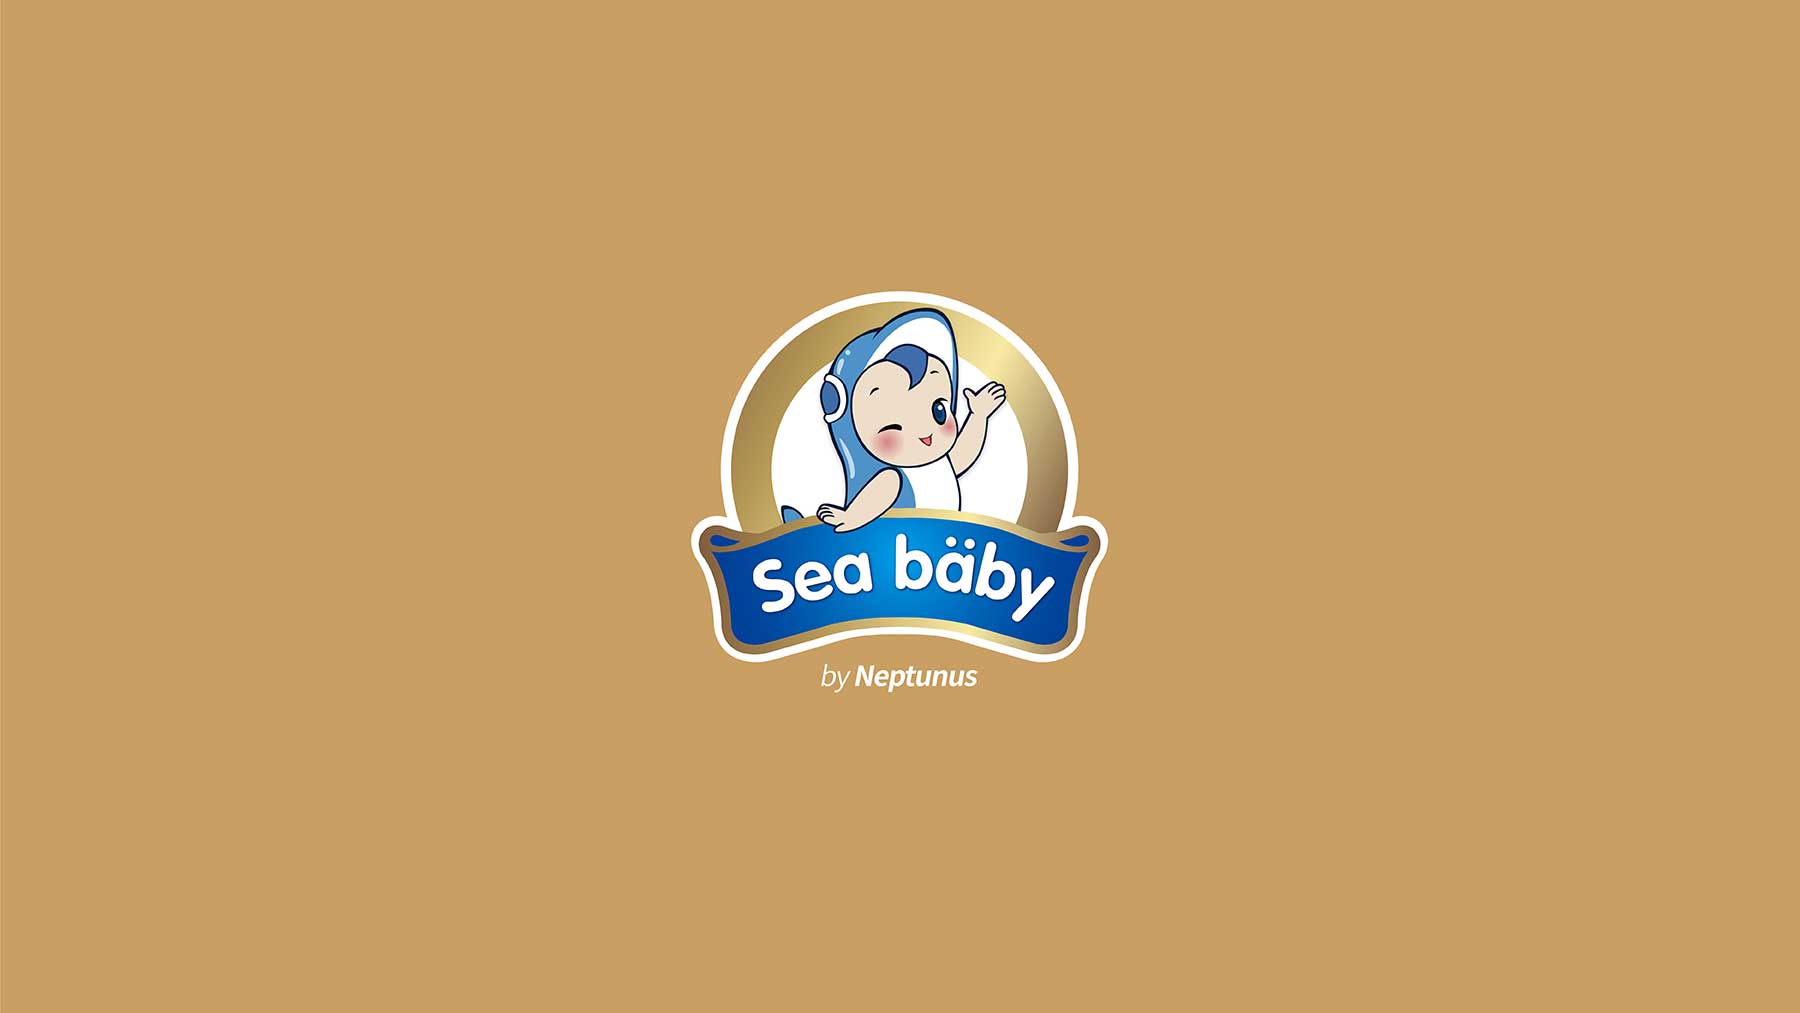 海婴宝 营养保健食品品牌设计  奶粉包装设计  儿童保健品包装设计  儿童保健品logo设计 儿童保健品vi设计 互与互创新品牌顾问